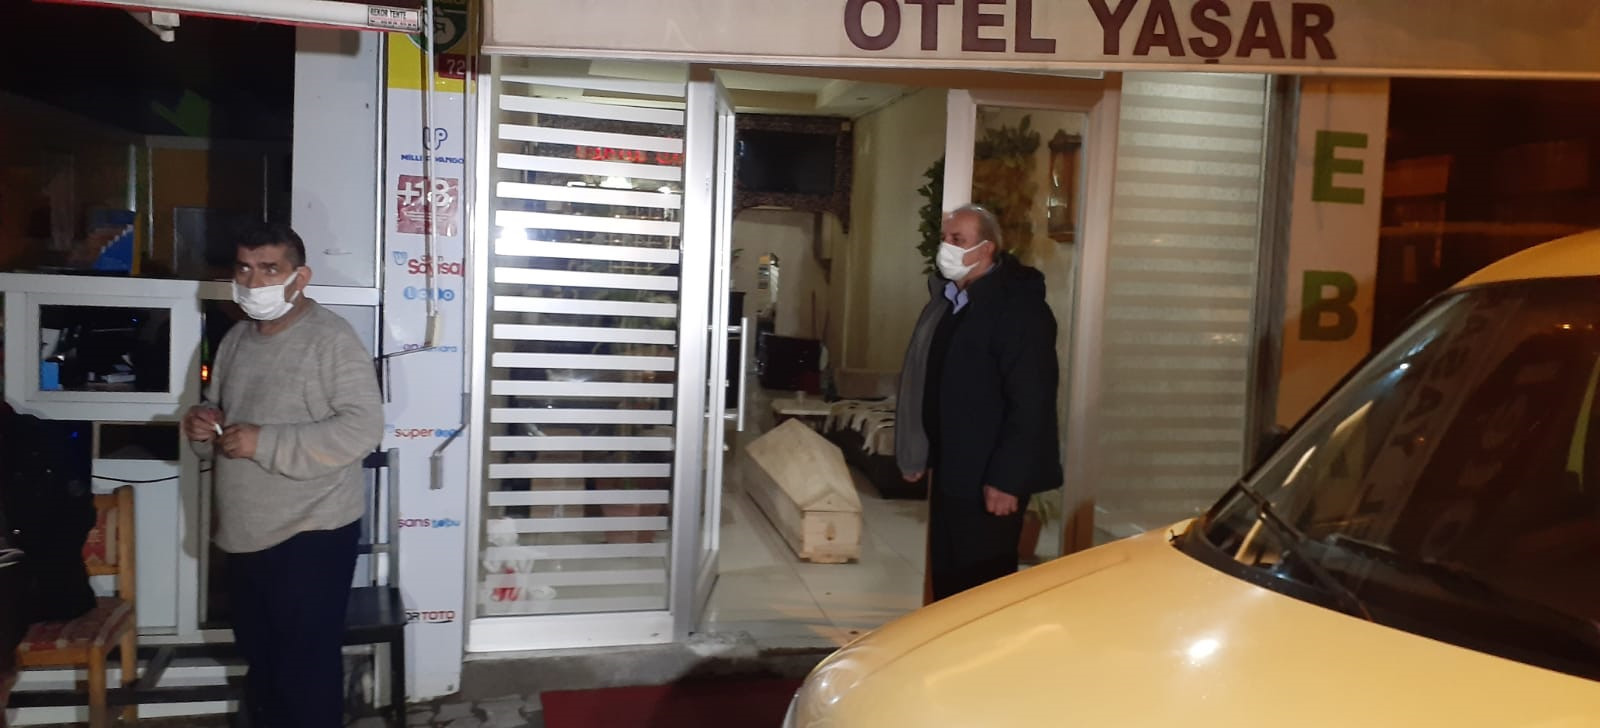 İstanbul'un Bayrampaşa ilçesindeki bir otelde çocuğuyla birlikte kalan 43 yaşındaki kadın, iple boğularak öldürüldü.